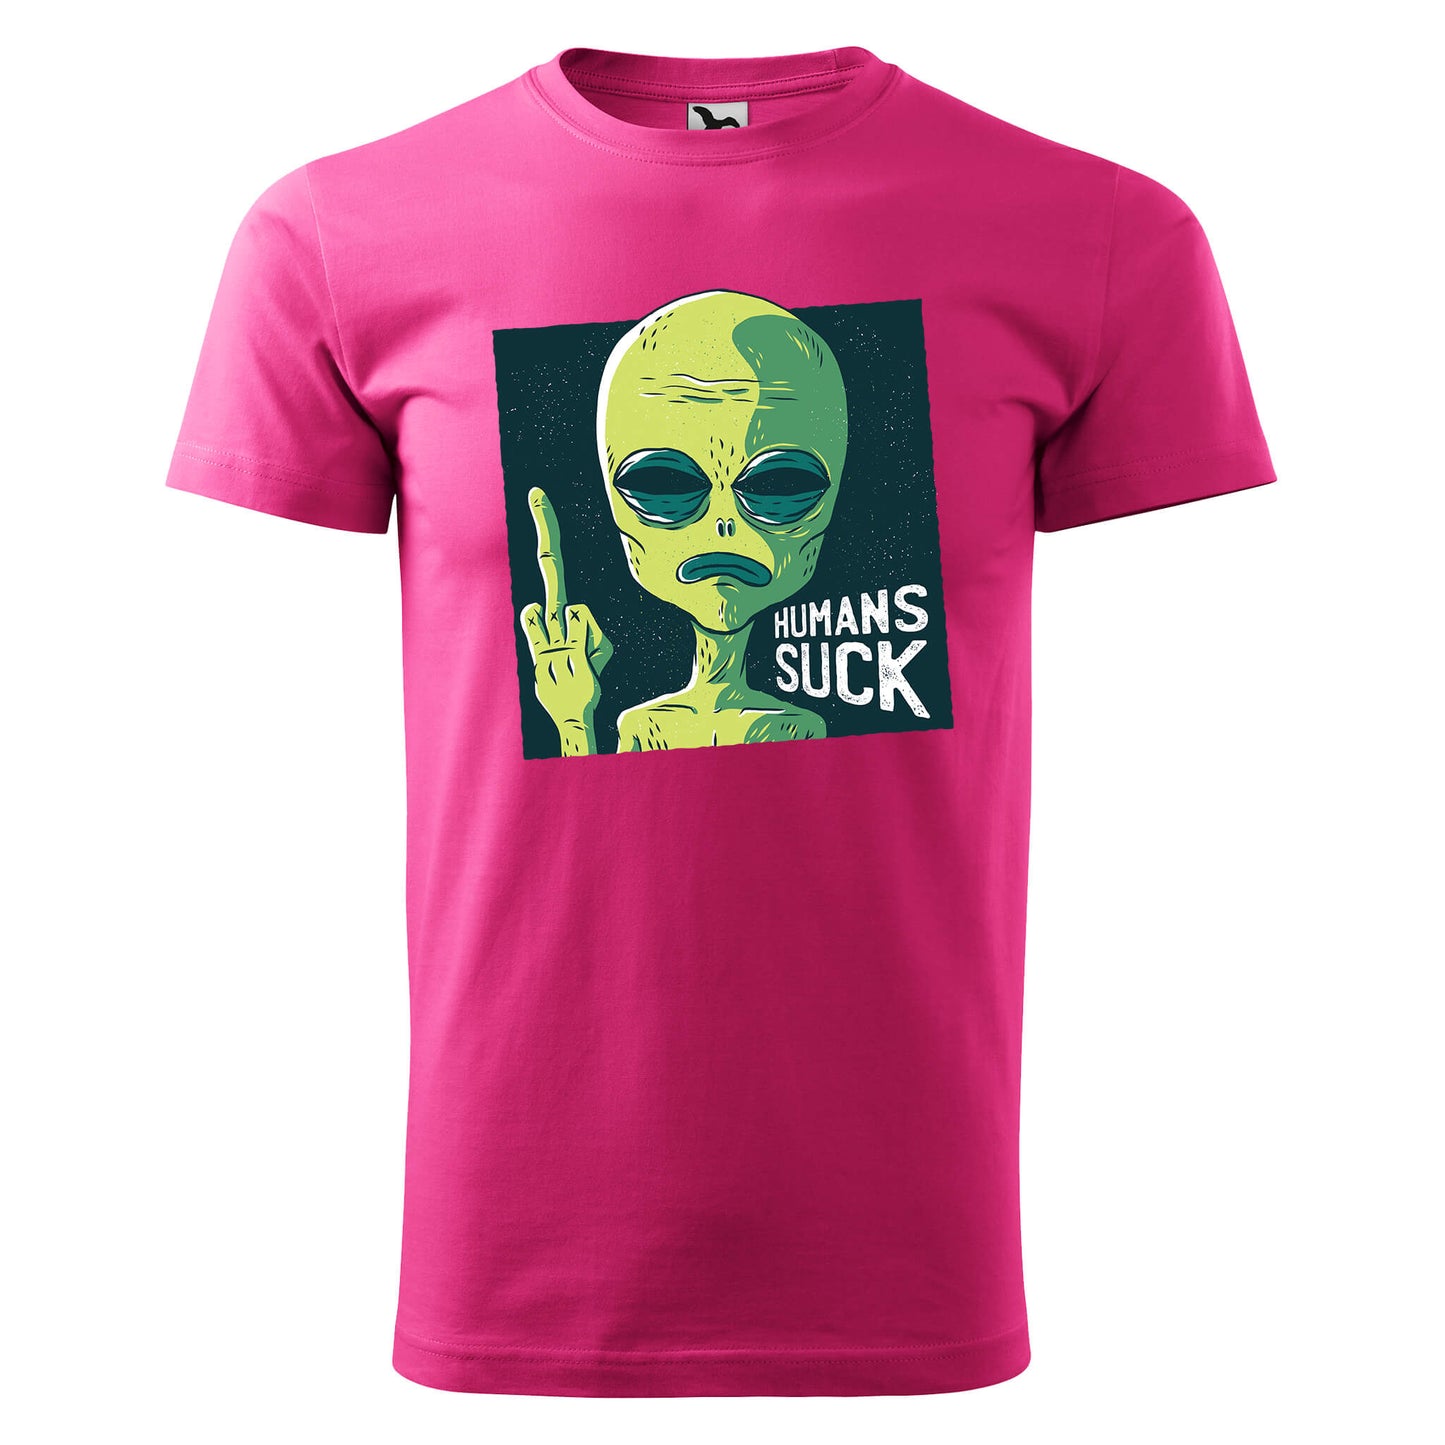 Humans suck alien t-shirt - rvdesignprint